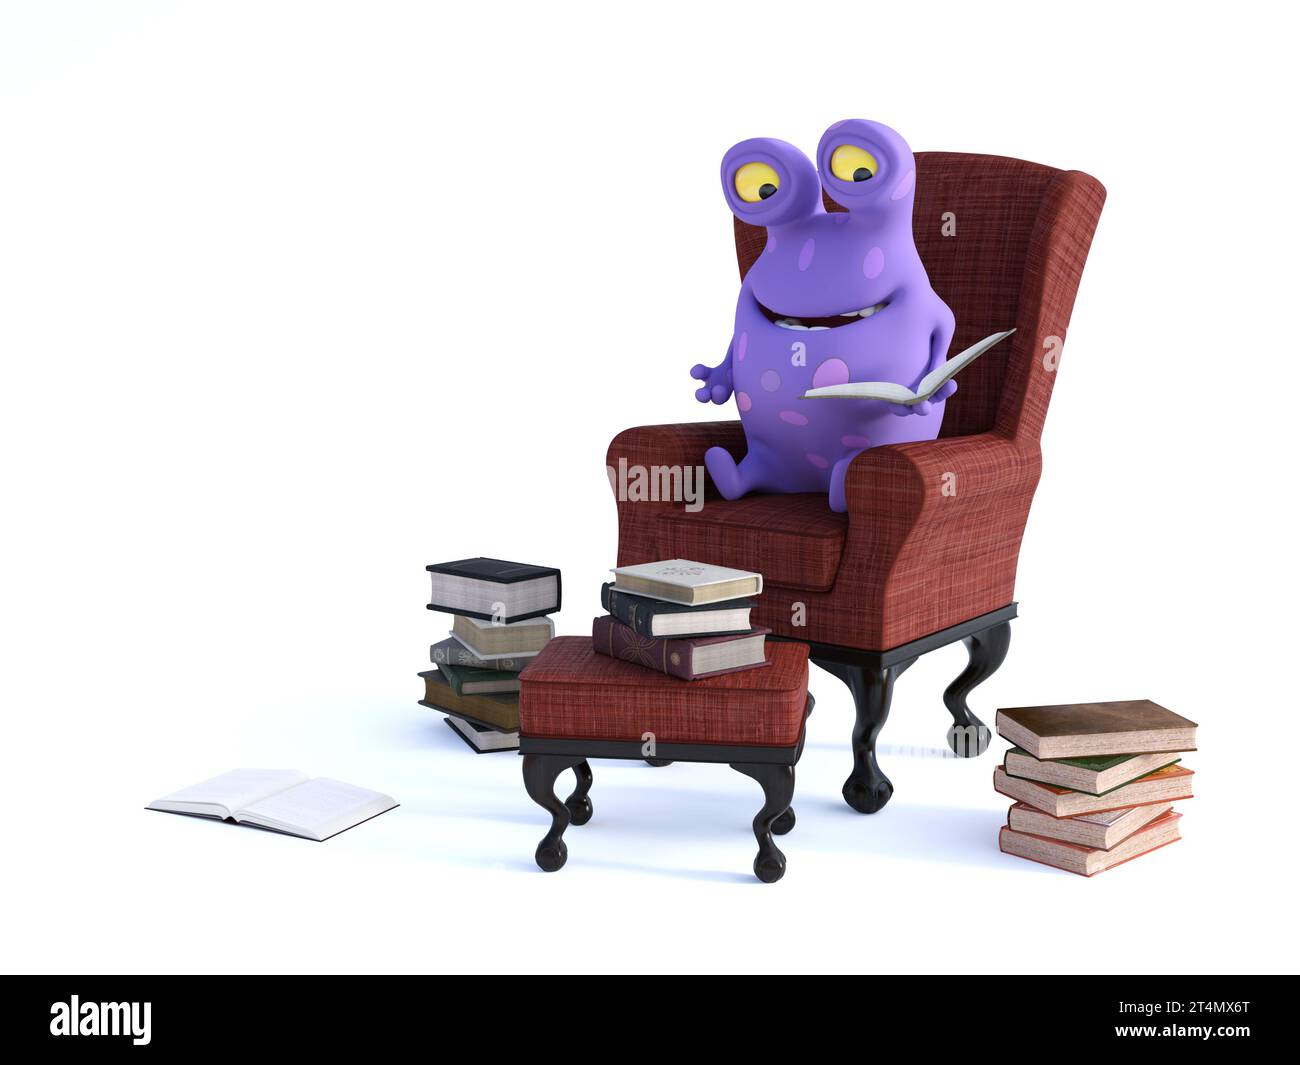 Un mignon monstre de dessin animé violet charmant assis dans un fauteuil tenant un livre dans sa main, prêt pour la lecture et l'heure de l'histoire. Piles de livres sur le floo Banque D'Images